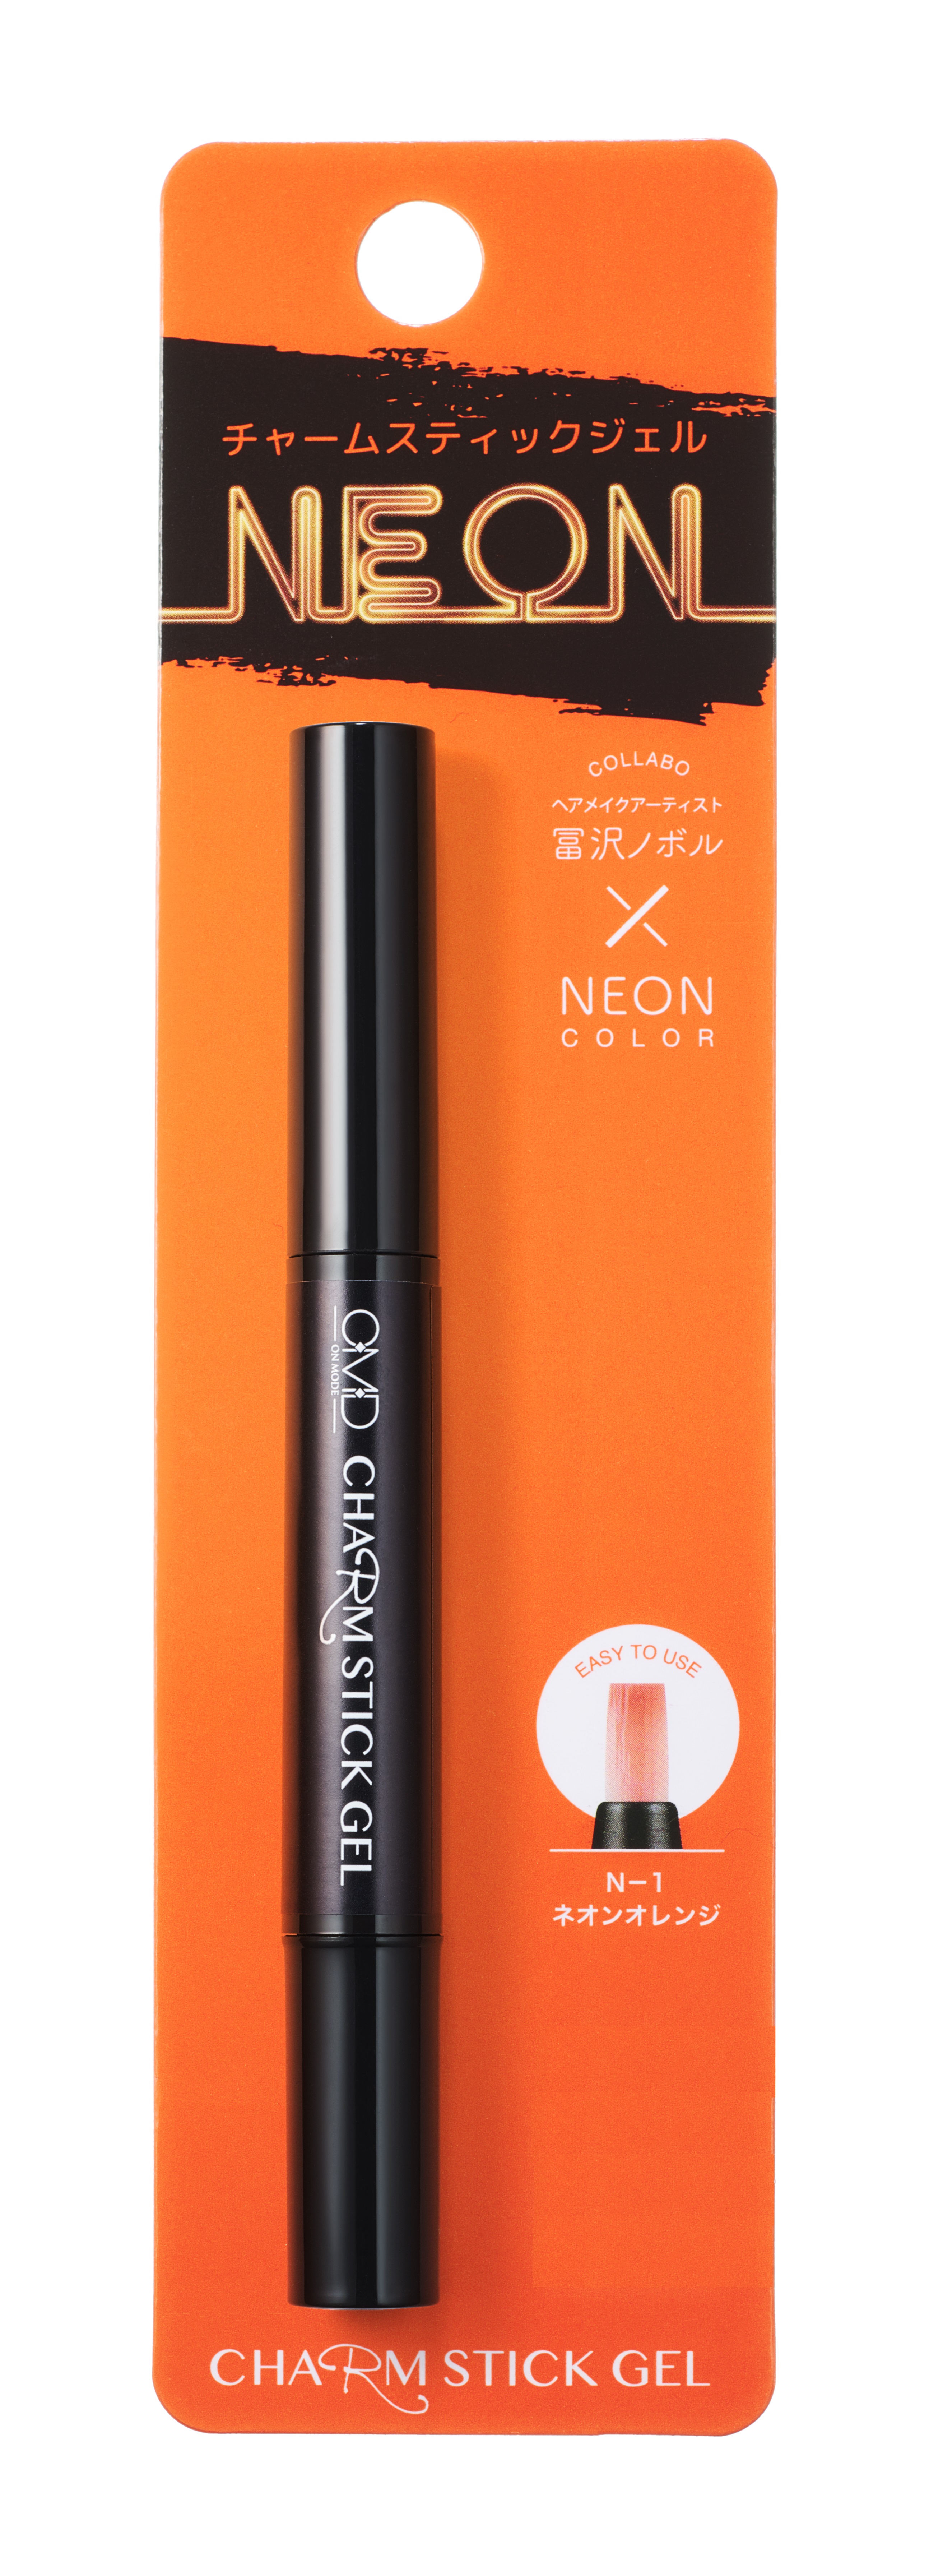 Гель-лак для ногтей OMD Charm Stick Gel N-1 Orange Neon 11шт набор магнит магнитная палочка ручки кошачий глаз гель лак уф светодиодный нейл арт маникюр